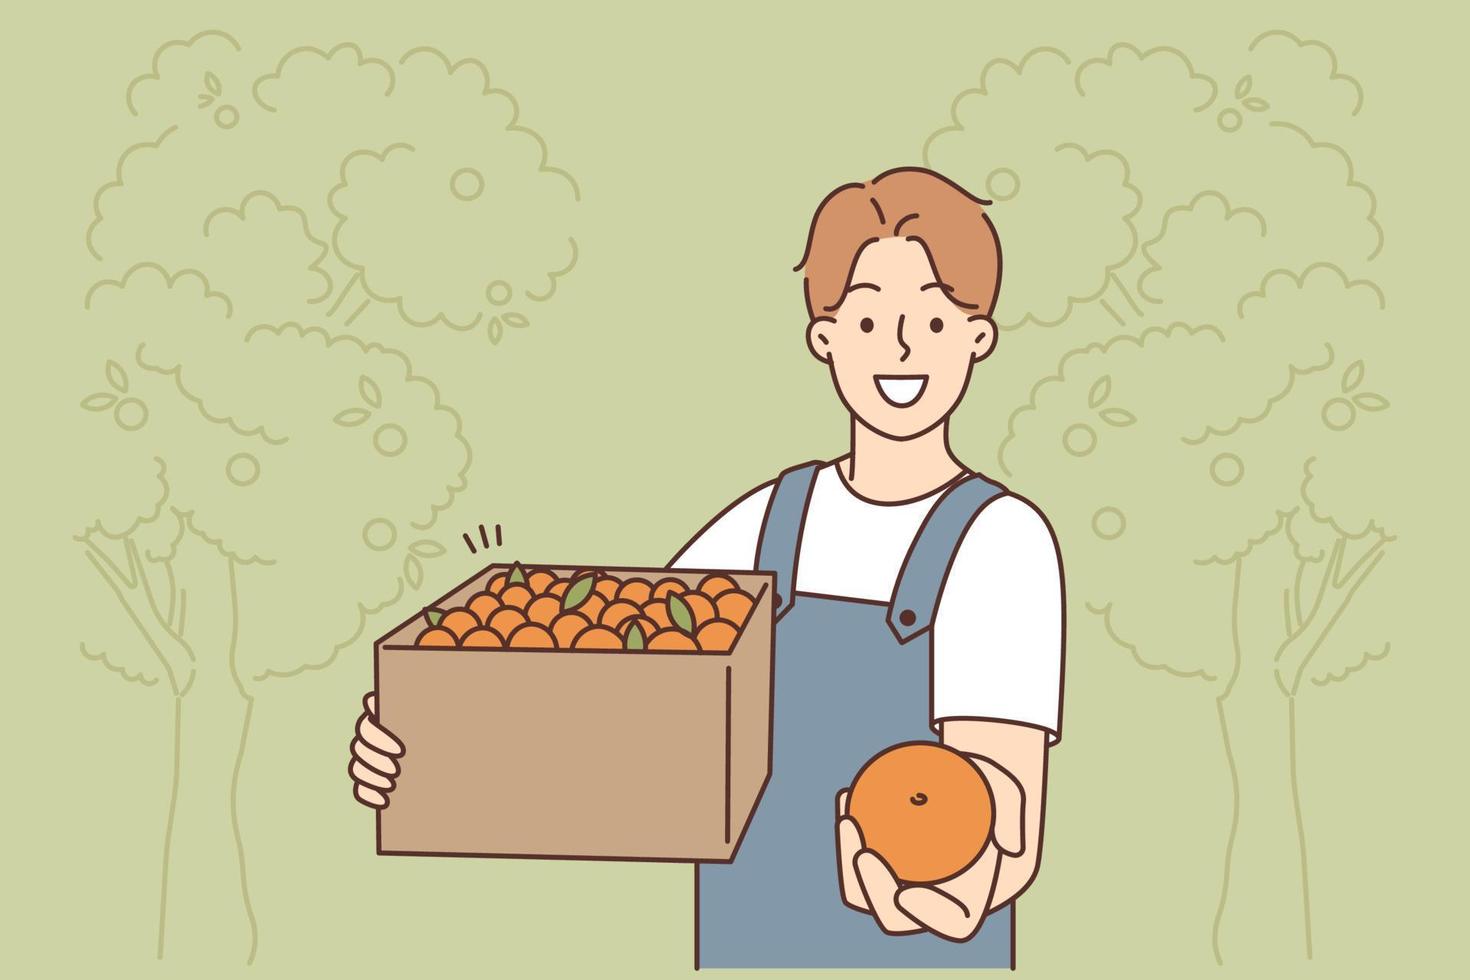 glimlachen mannetje boer met doos van sinaasappels verzameld in tuin. gelukkig Mens tuinman aanbod vers fruit. landbouw en tuinieren. vector illustratie.